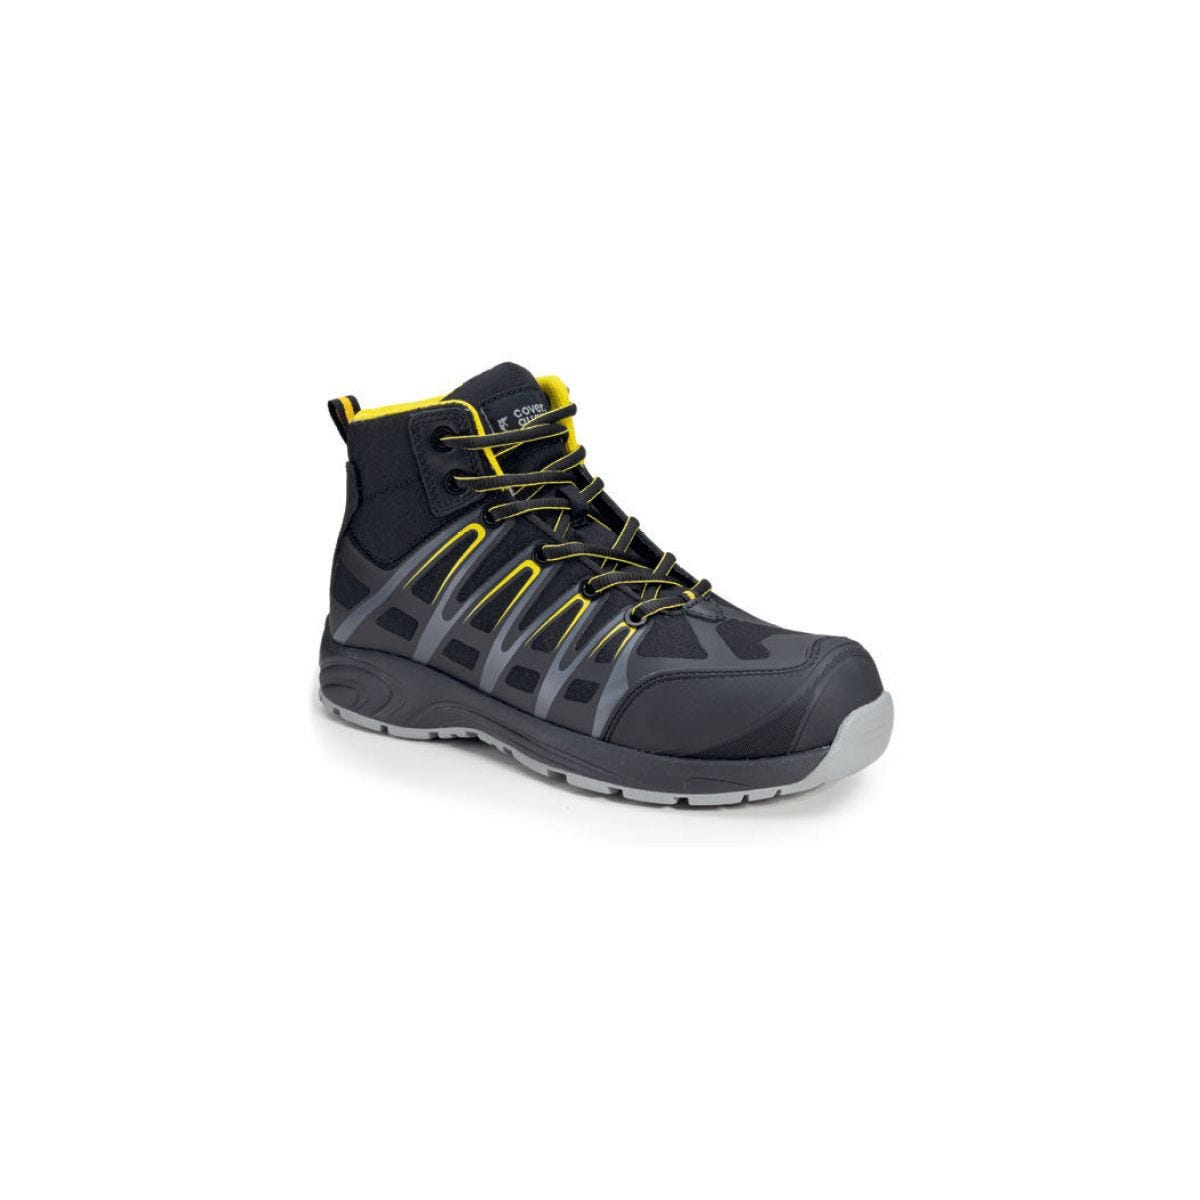 Chaussures de sécurité hautes ALUNI S3 noir et jaune - Coverguard - Taille 38 0